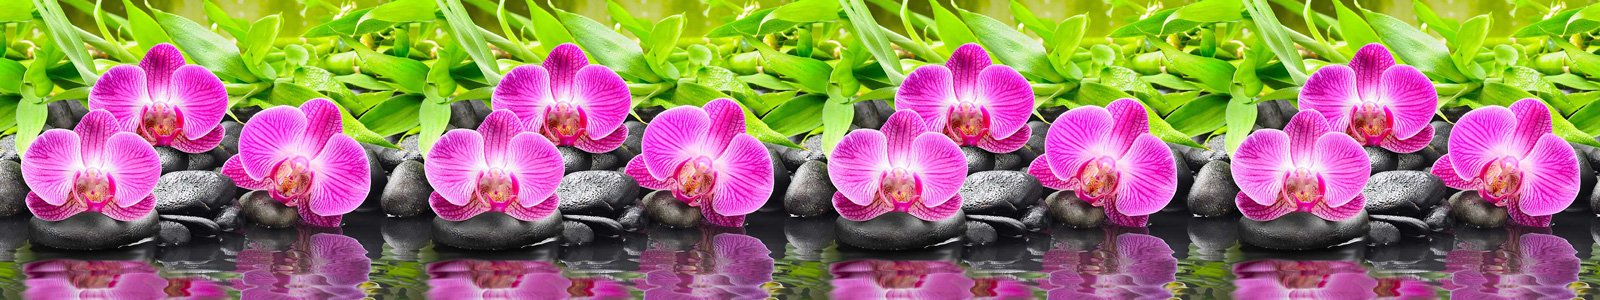 №7219 - Пурпурная орхидея на базальтовых камушках